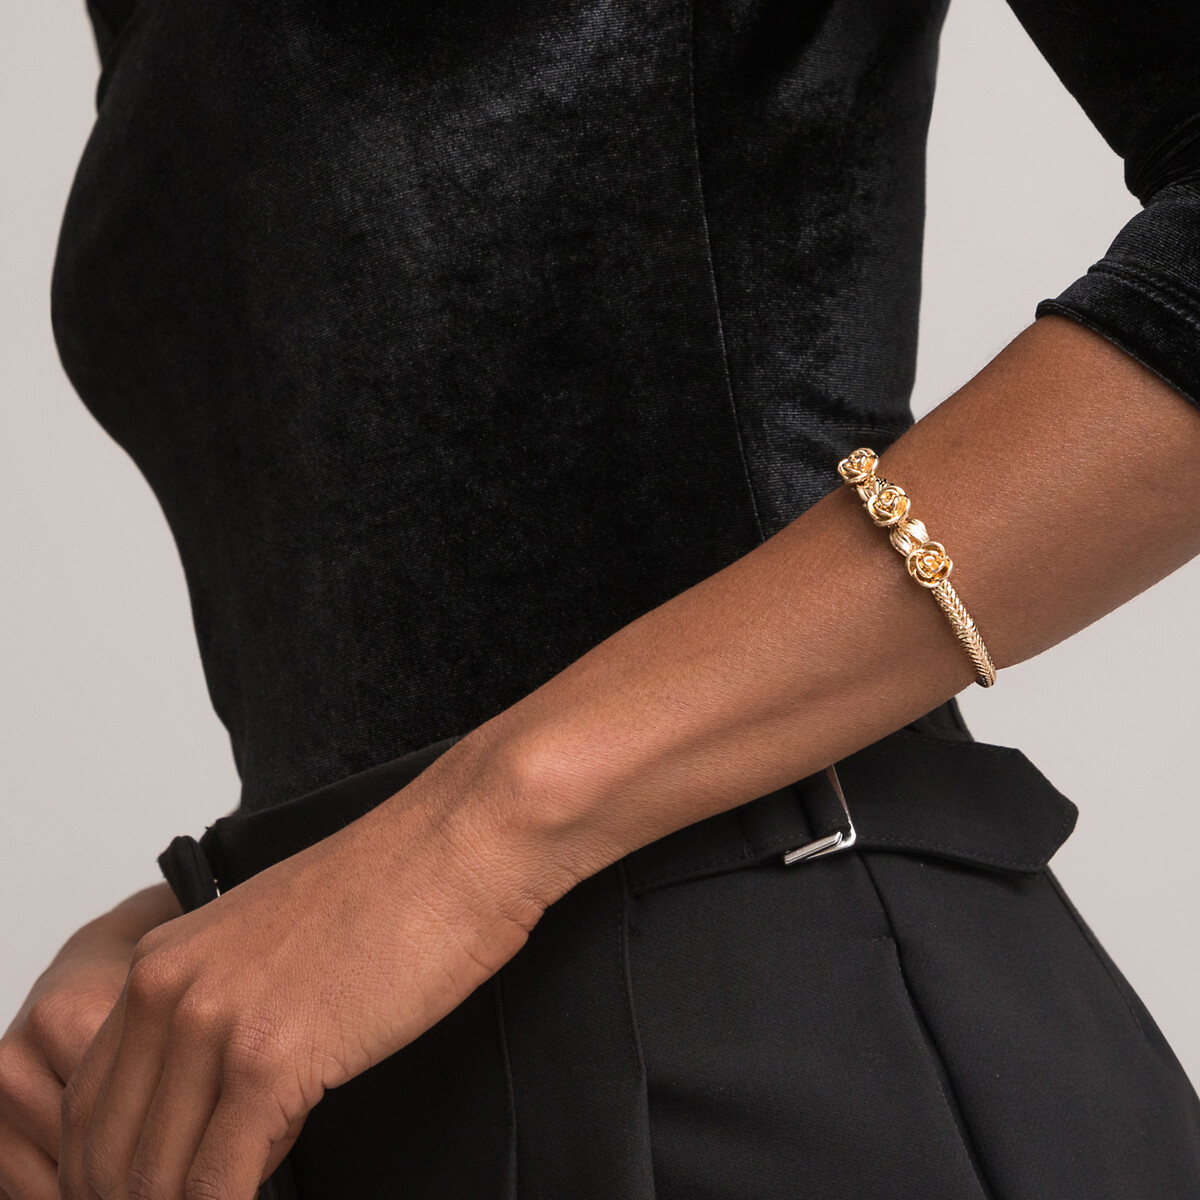 Bracelet Forever acier doré or : Large choix de bracelets, manchettes,  joncs pour femme pas chers. Trouver votre nouveau bracelet femme !